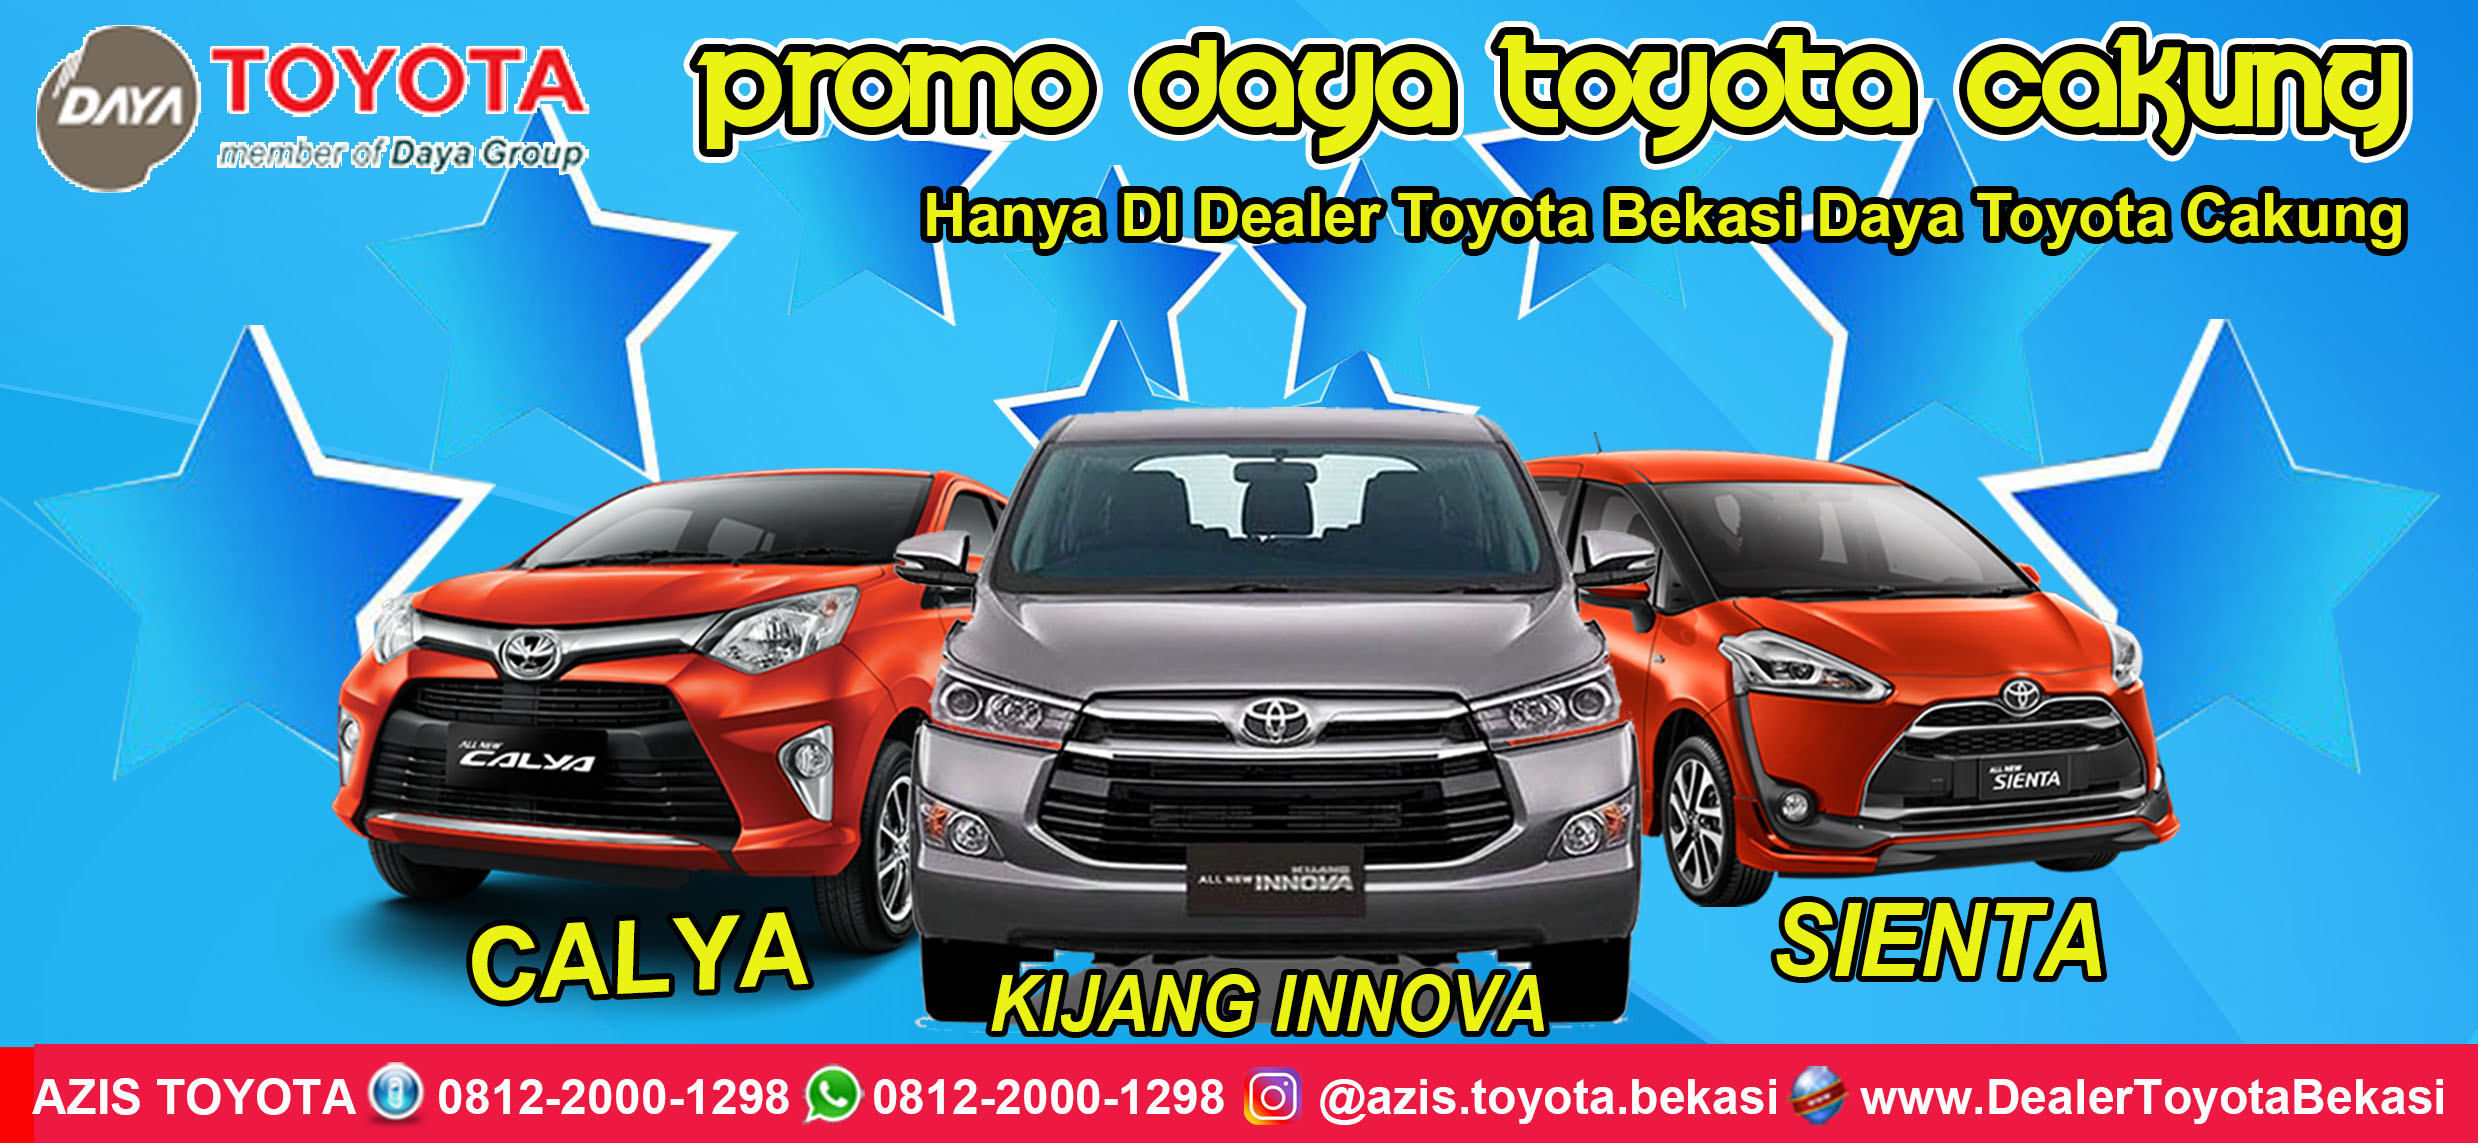 Promo Daya Toyota Cakung - Dealer Toyota Bekasi Daya Toyota Cakung